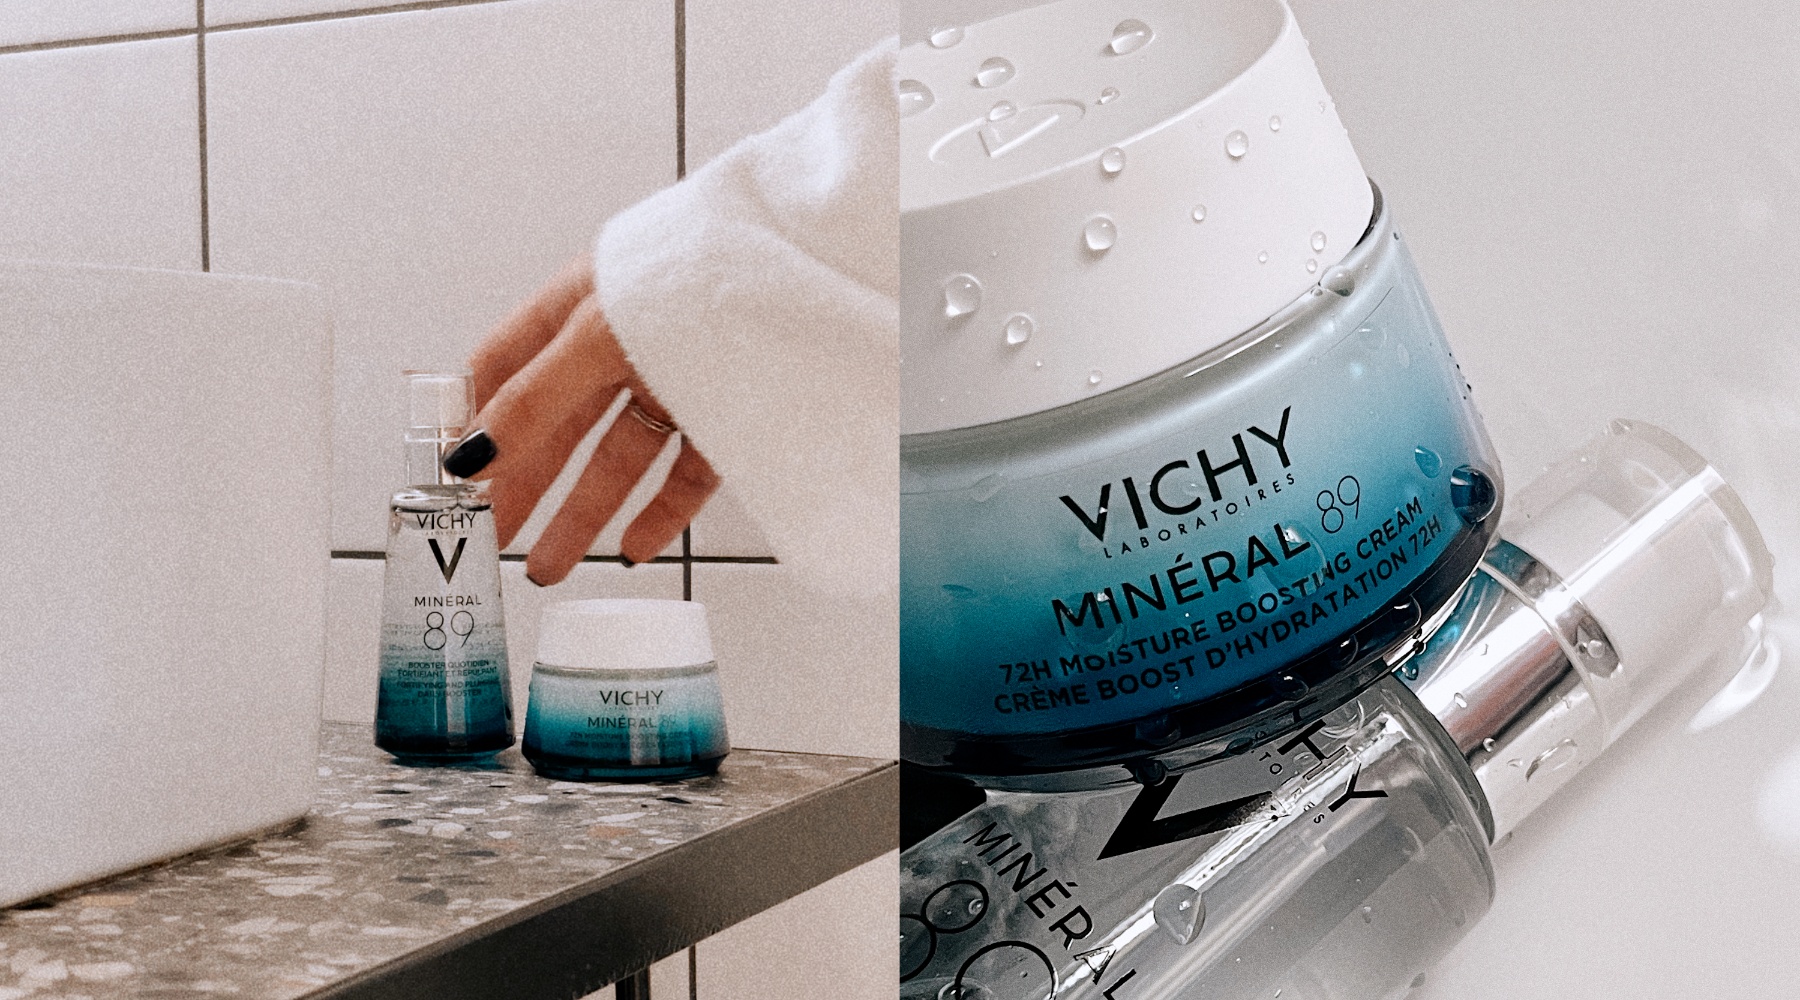 Journal recenzija: Isprobali smo proizvode iz Vichy Minéral 89 linije – ovo su naši utisci